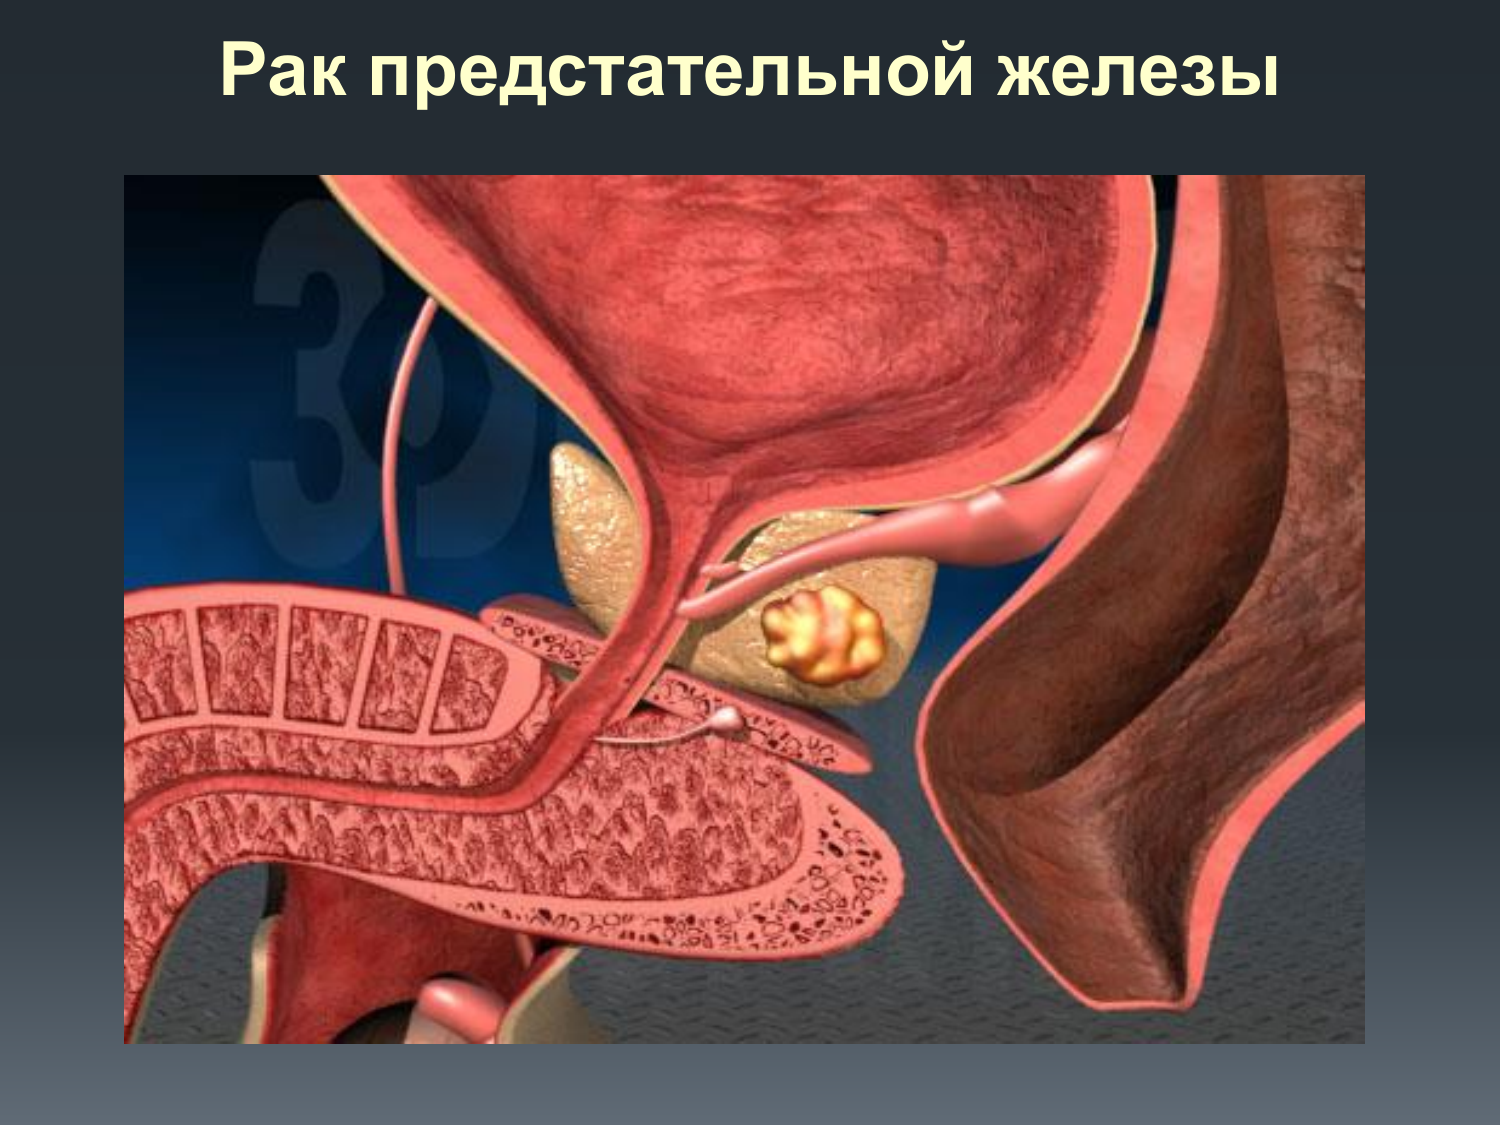 Онкологии предстательной железы у мужчин. Злокачественная опухоль предстательной железы. Онко предстательной железы. Карцинома предстательной железы. Раковая опухоль простаты.